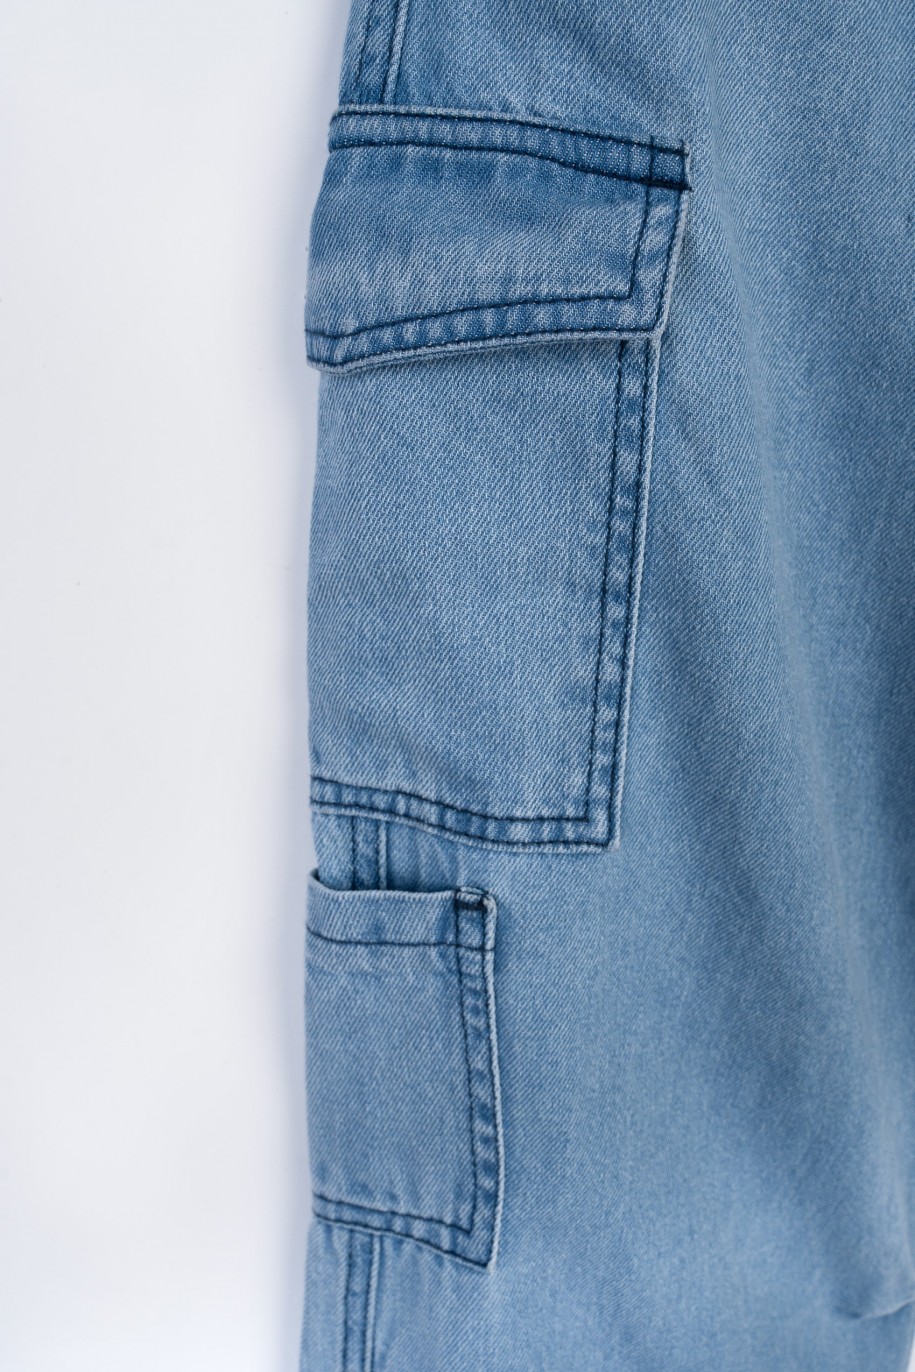 Niebieskie jeansowe spodnie typu cargo z przestrzennymi kieszeniami - 47568